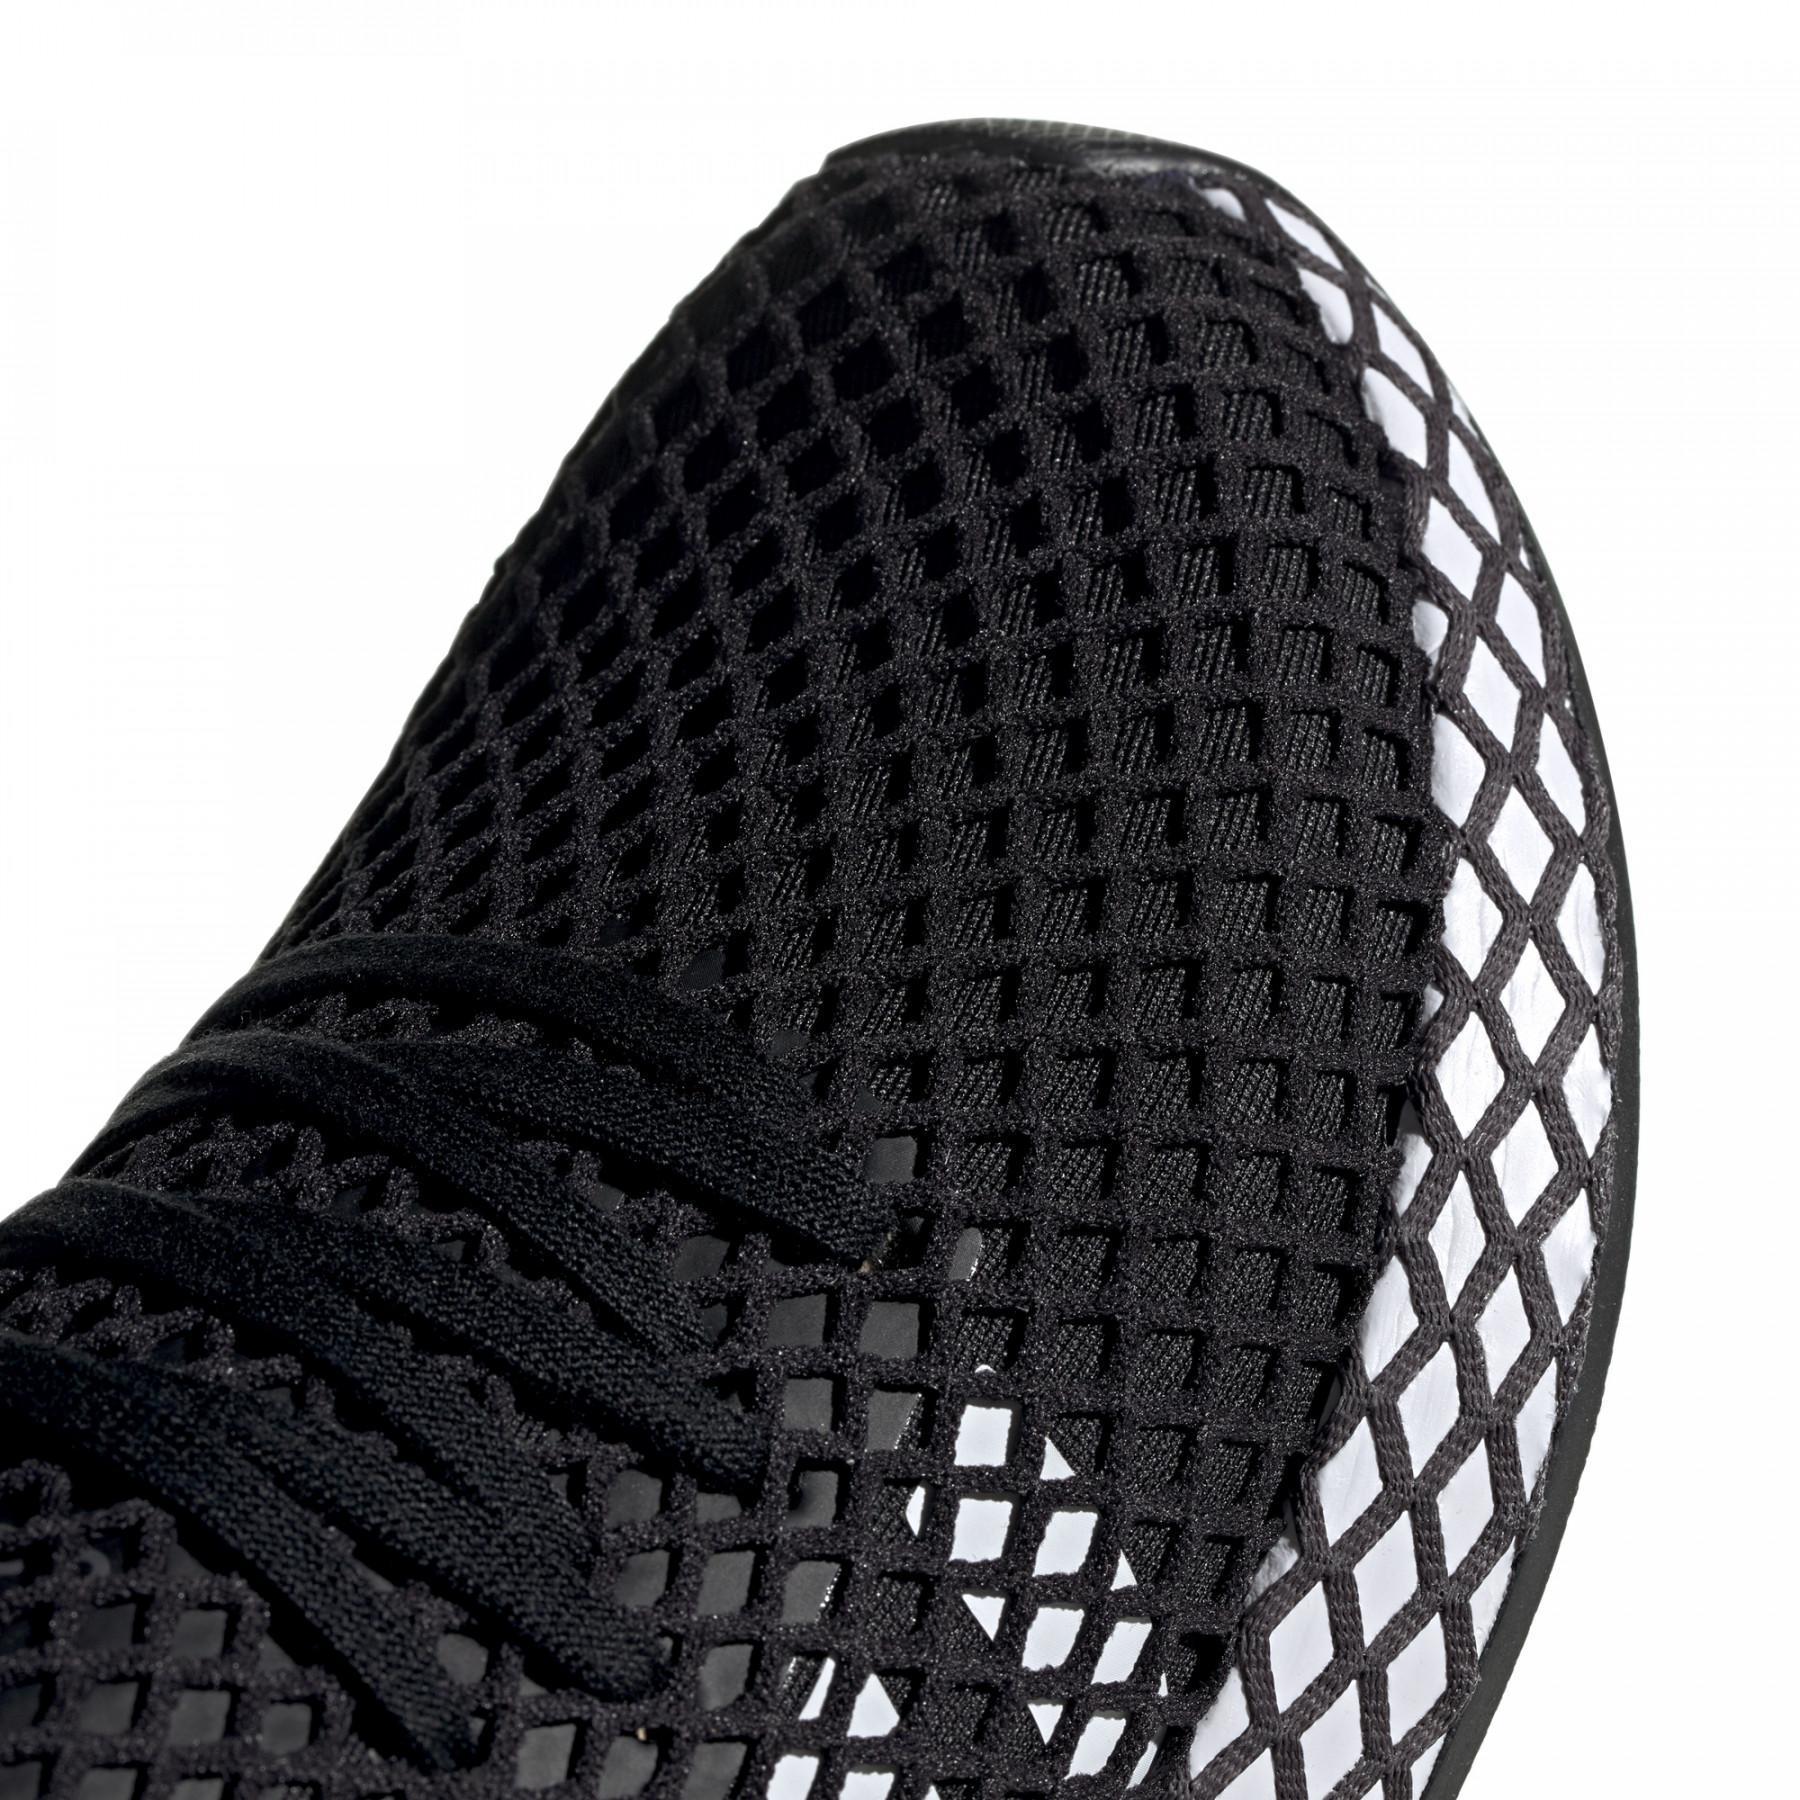 Scarpe adidas Deerupt Runner per bambini